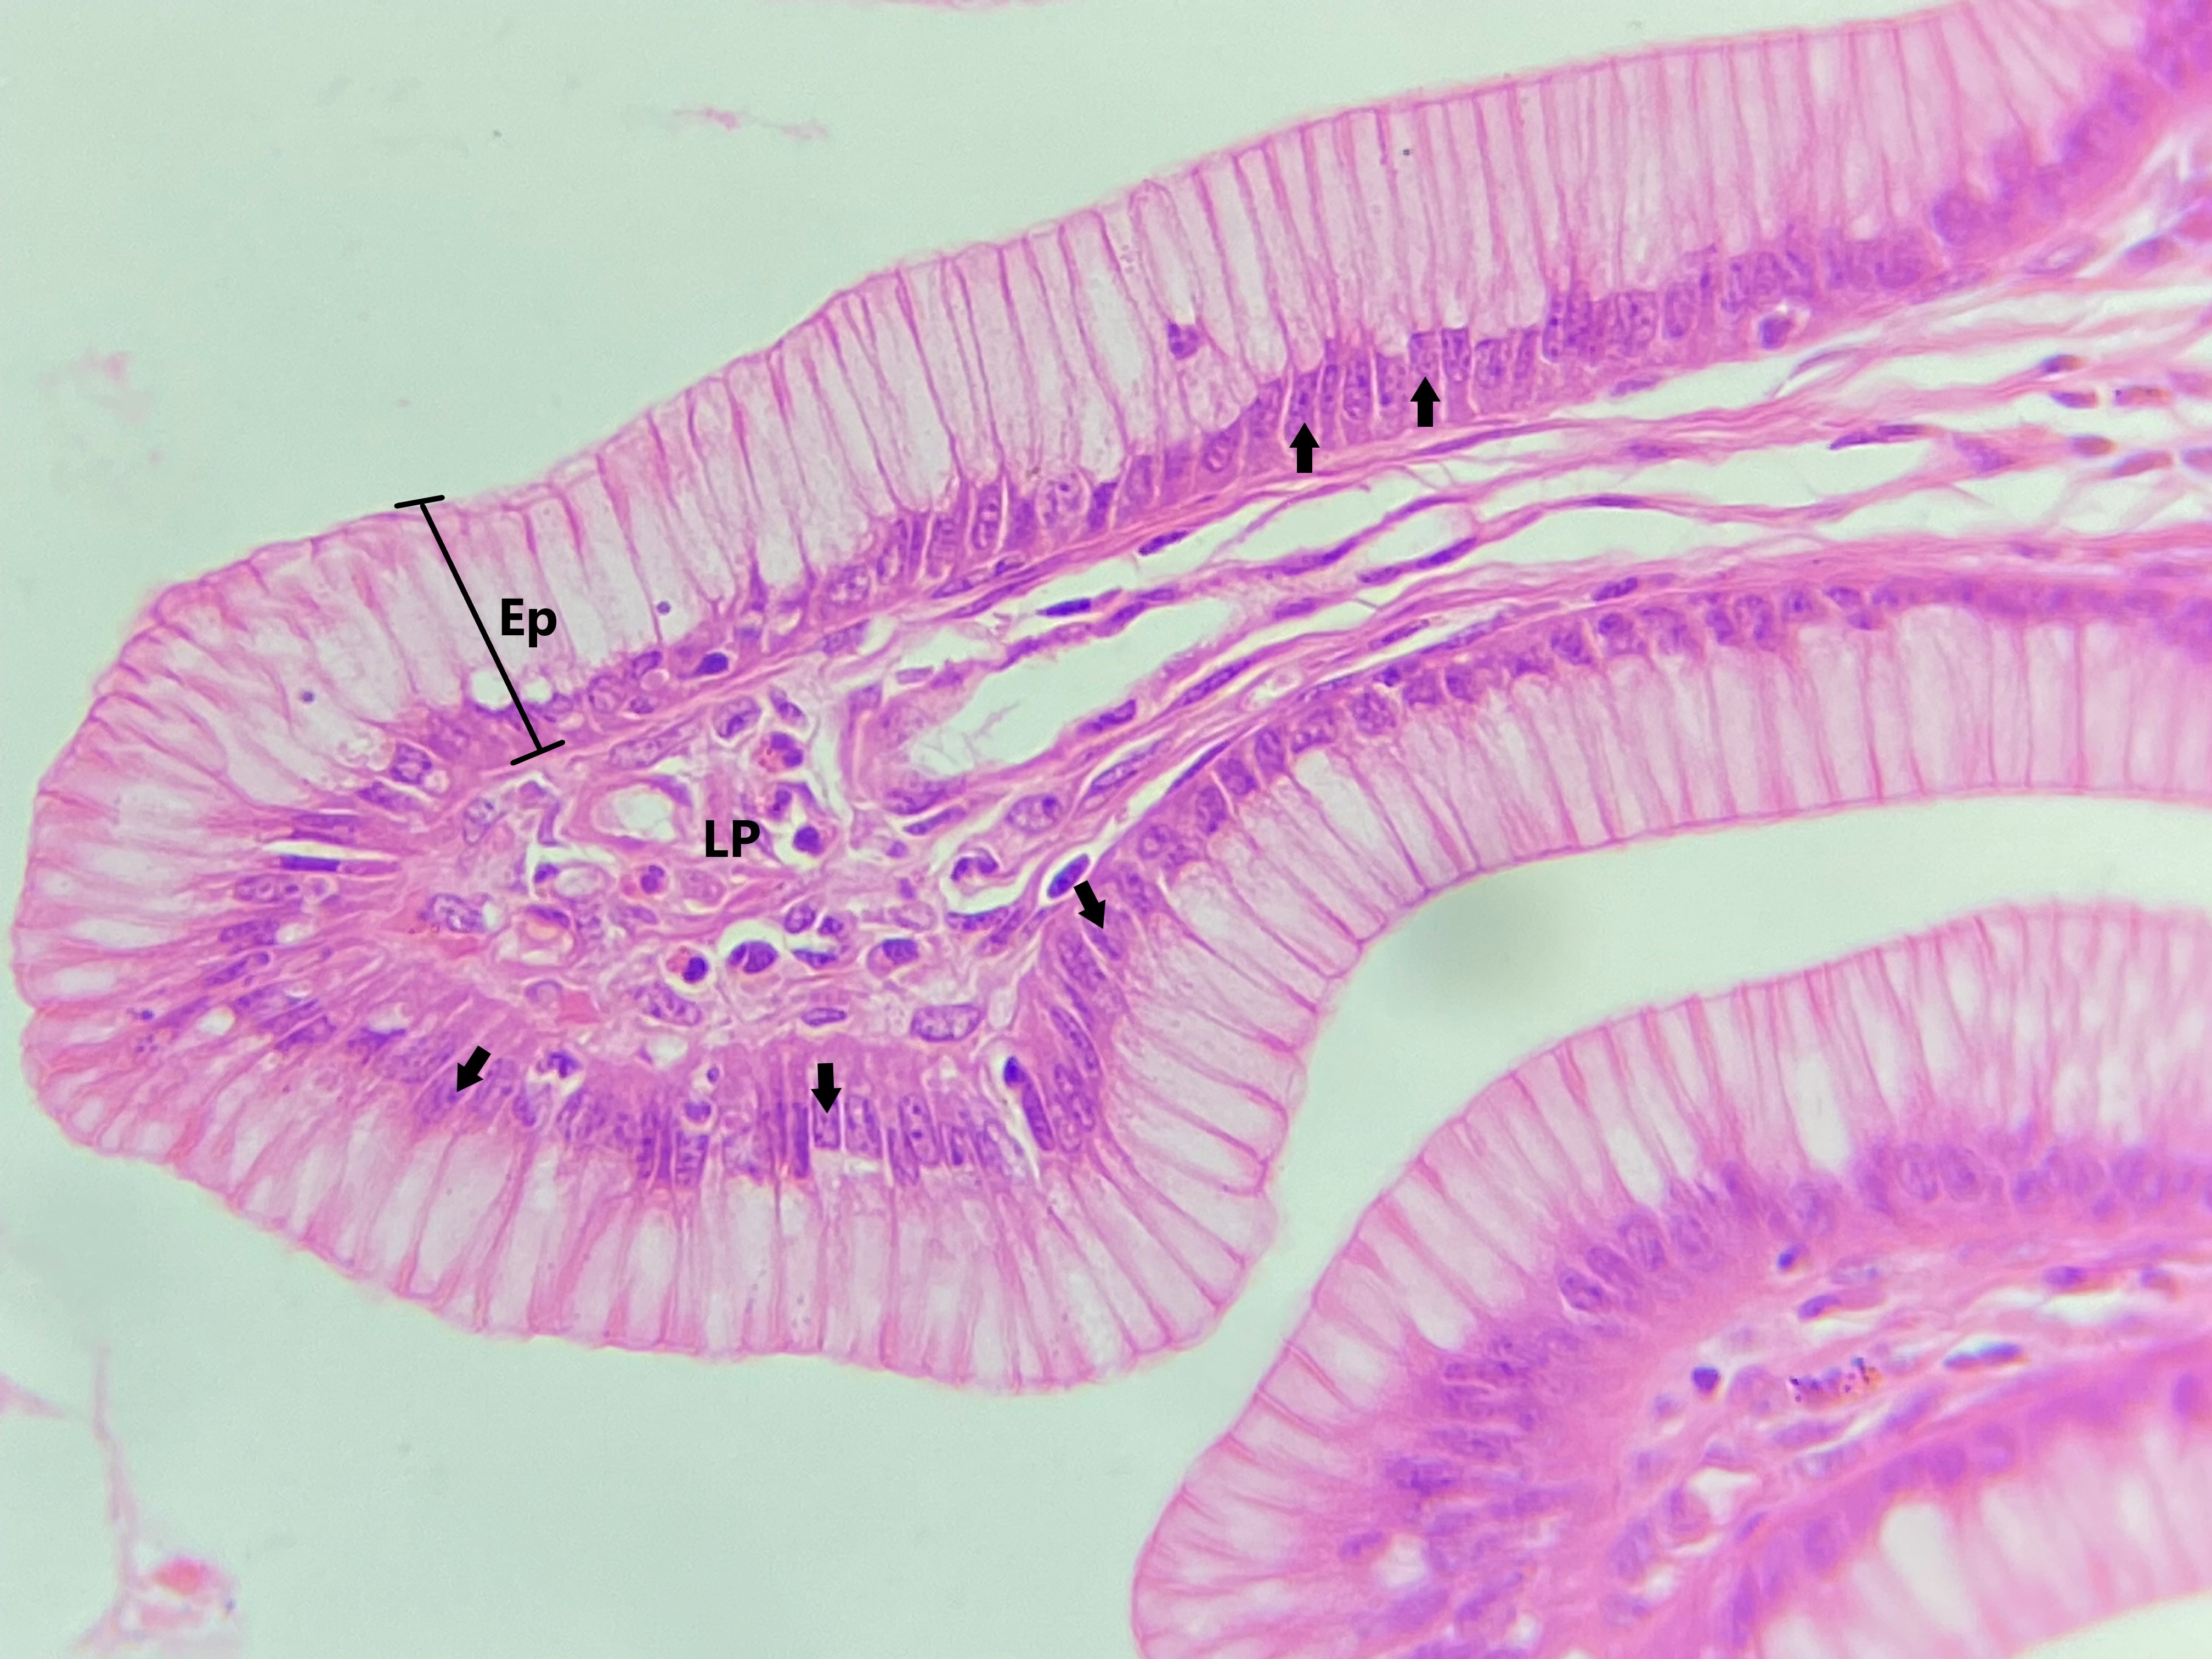 Lâmina: Estômago (H&E - Aumento: 400x). Nessa secção do estômago é possível observar o epitélio simples colunar (Ep), formado por uma única camada de células altas (colunares).  Os núcleos das células colunares (setas) são alongados (dispostos no sentido do eixo maior das células) e localizados na região basal das células. Abaixo do epitélio, nota-se a lâmina própria (LP) de tecido conjuntivo frouxo.